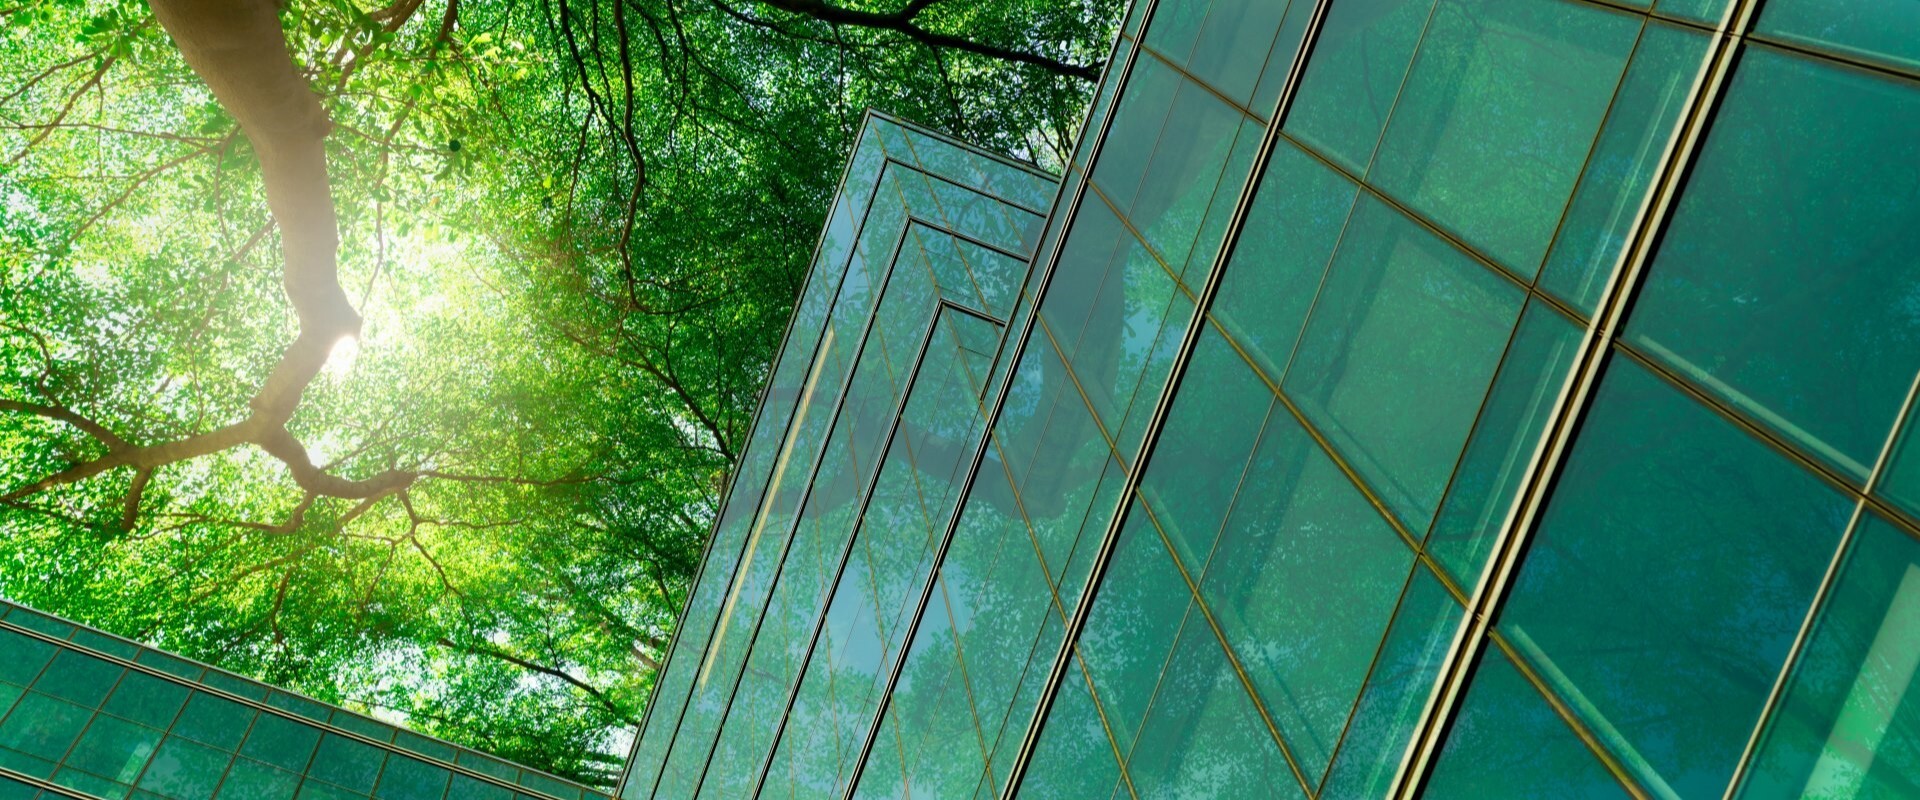 社員紹介 Top Vault Getty Images 1330498048 Top Building Trees Green Sun